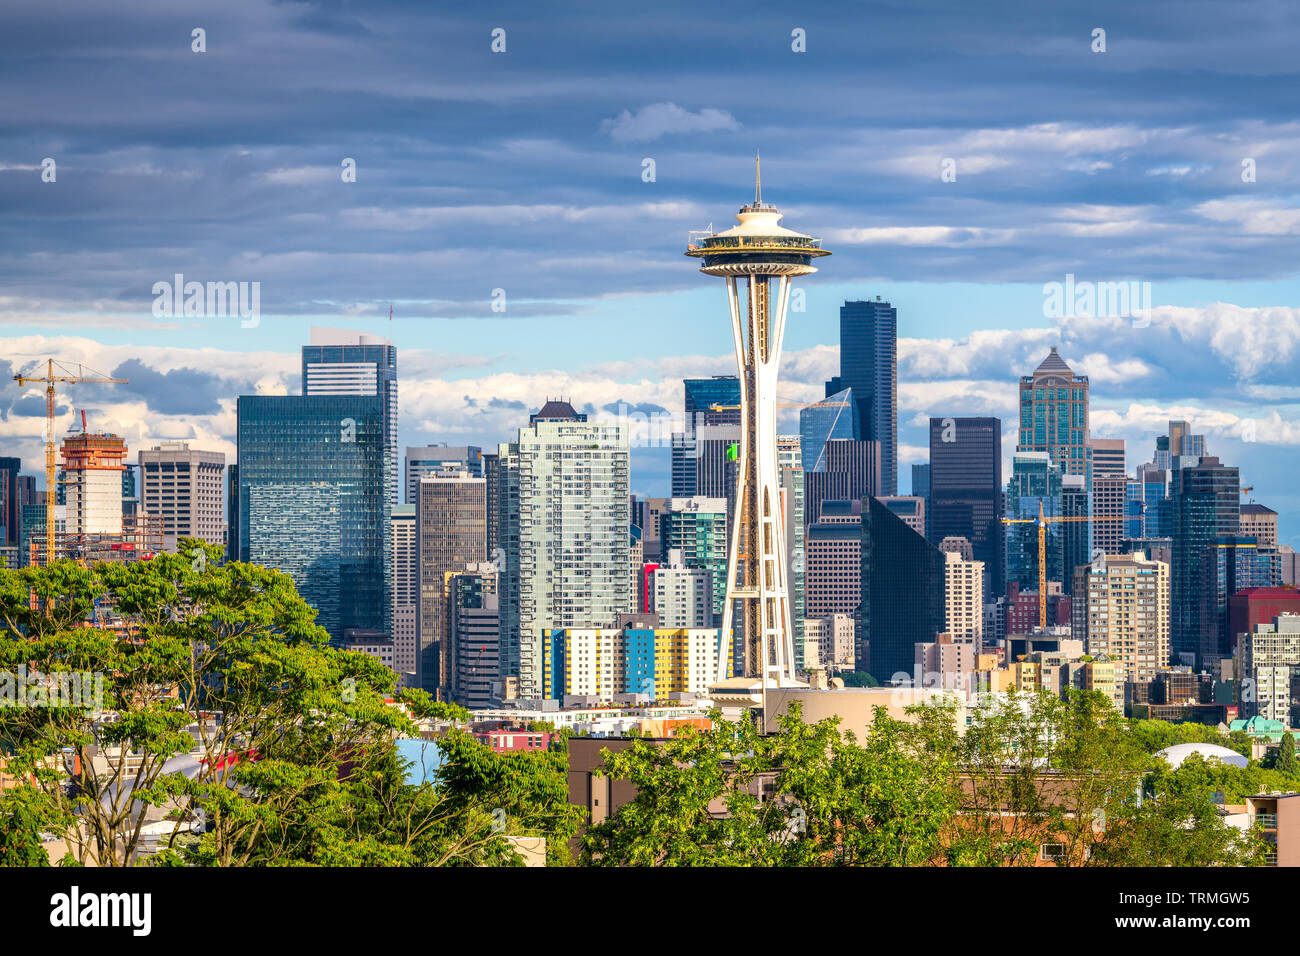 Seattle, Washington, USA downtown skyline. Stock Photo